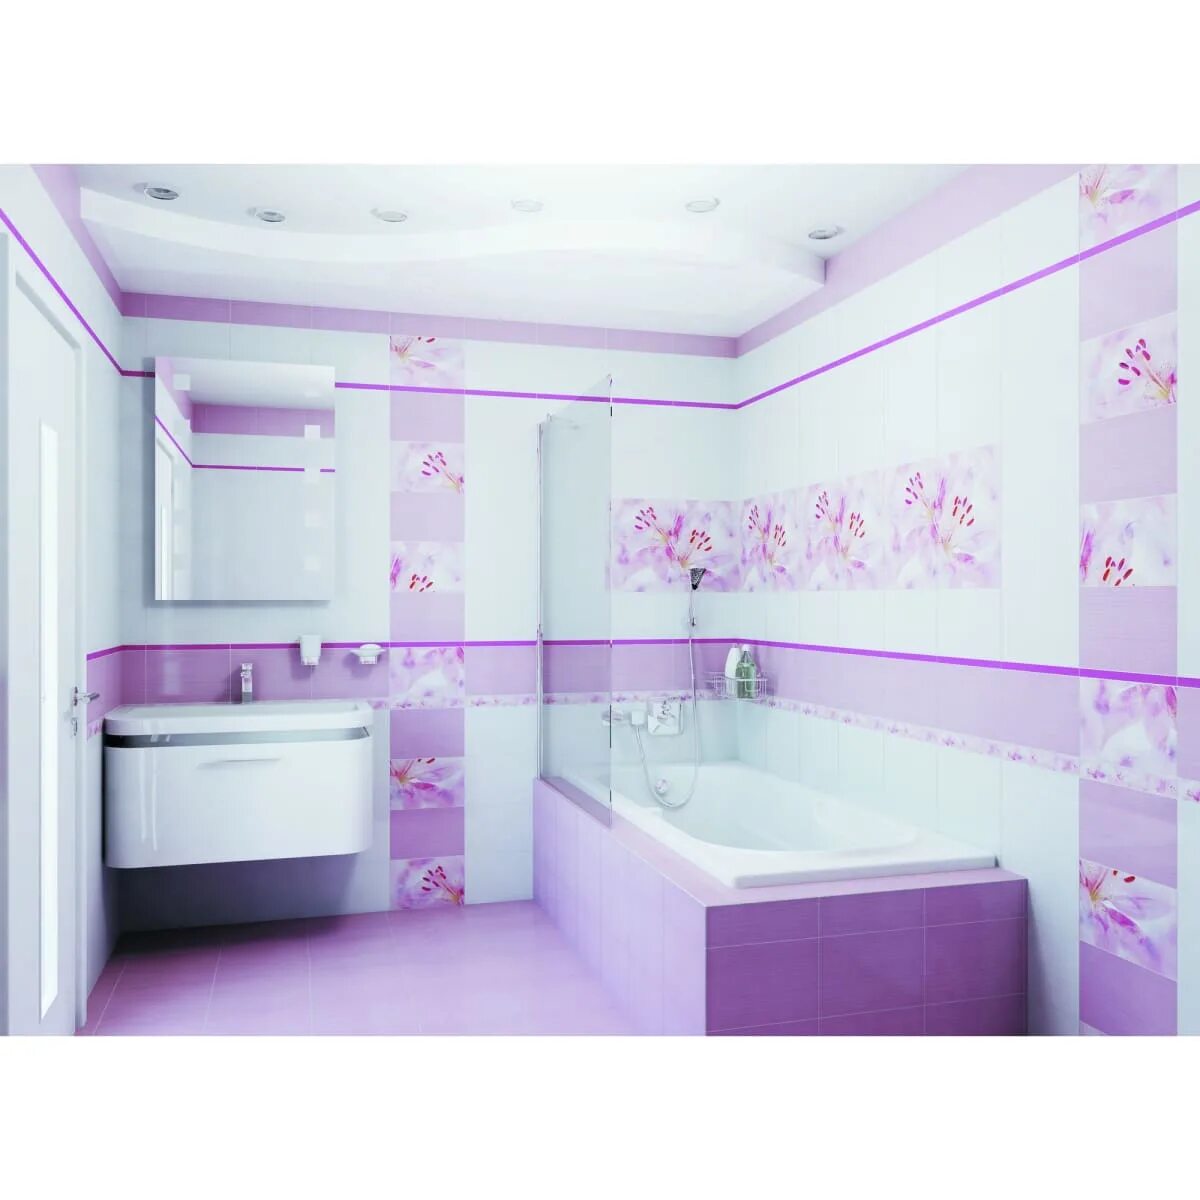 Леруа кафельная плитка для ванной. Плитка Лила Леруа Мерлен. Плитка Lily Дельта керамика. Плитка для ванной. Розовая ванная.